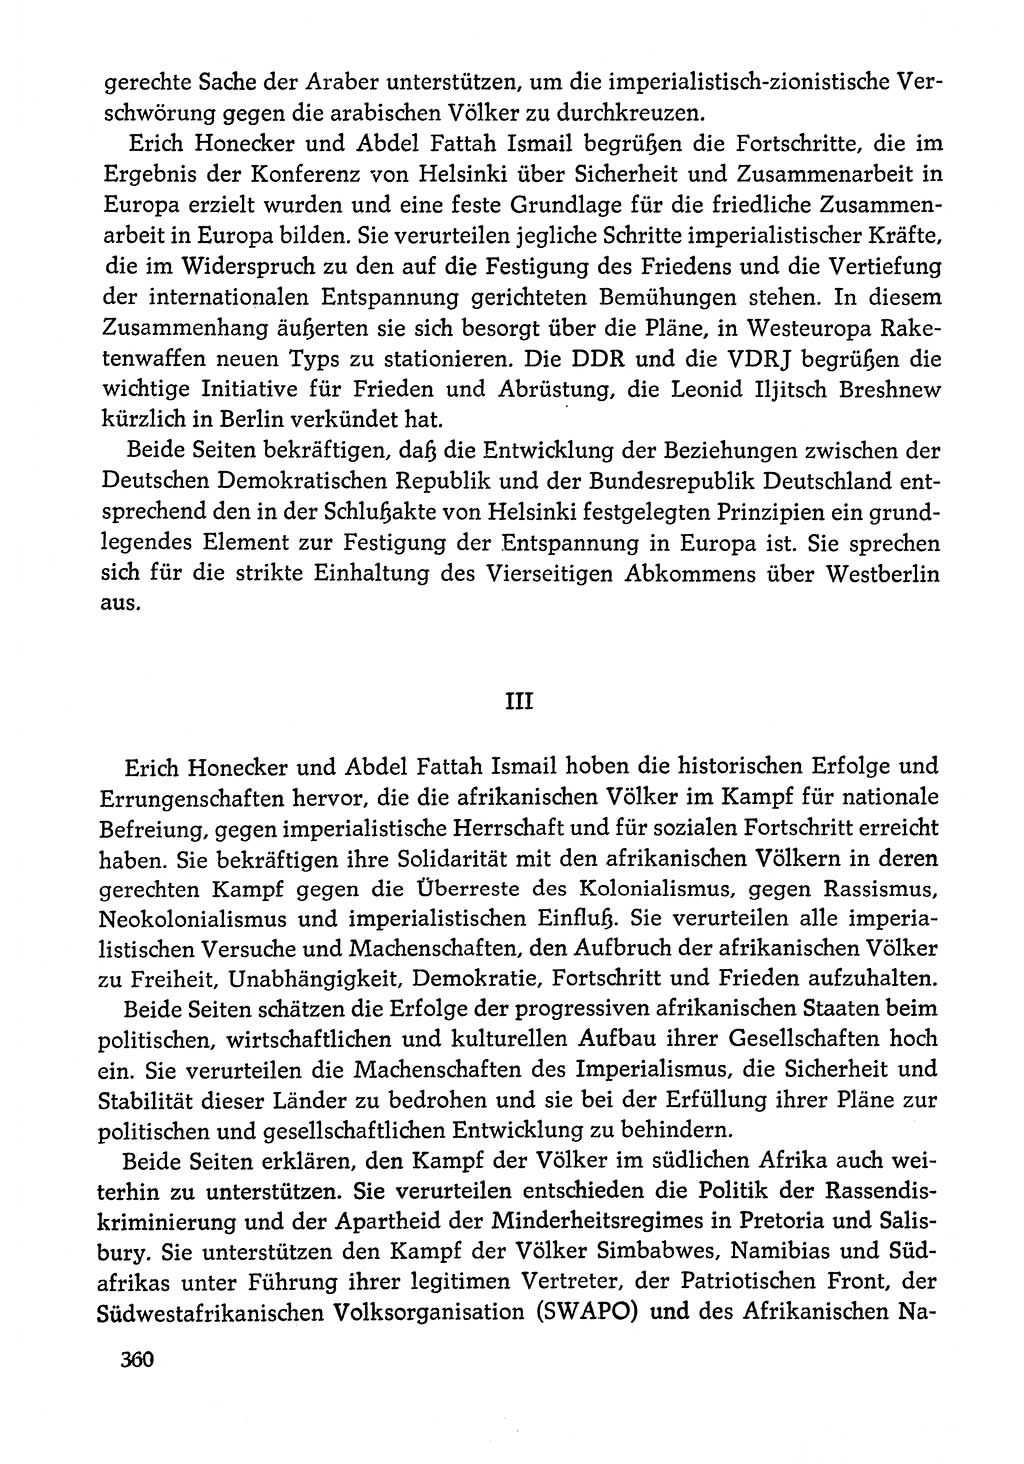 Dokumente der Sozialistischen Einheitspartei Deutschlands (SED) [Deutsche Demokratische Republik (DDR)] 1978-1979, Seite 360 (Dok. SED DDR 1978-1979, S. 360)